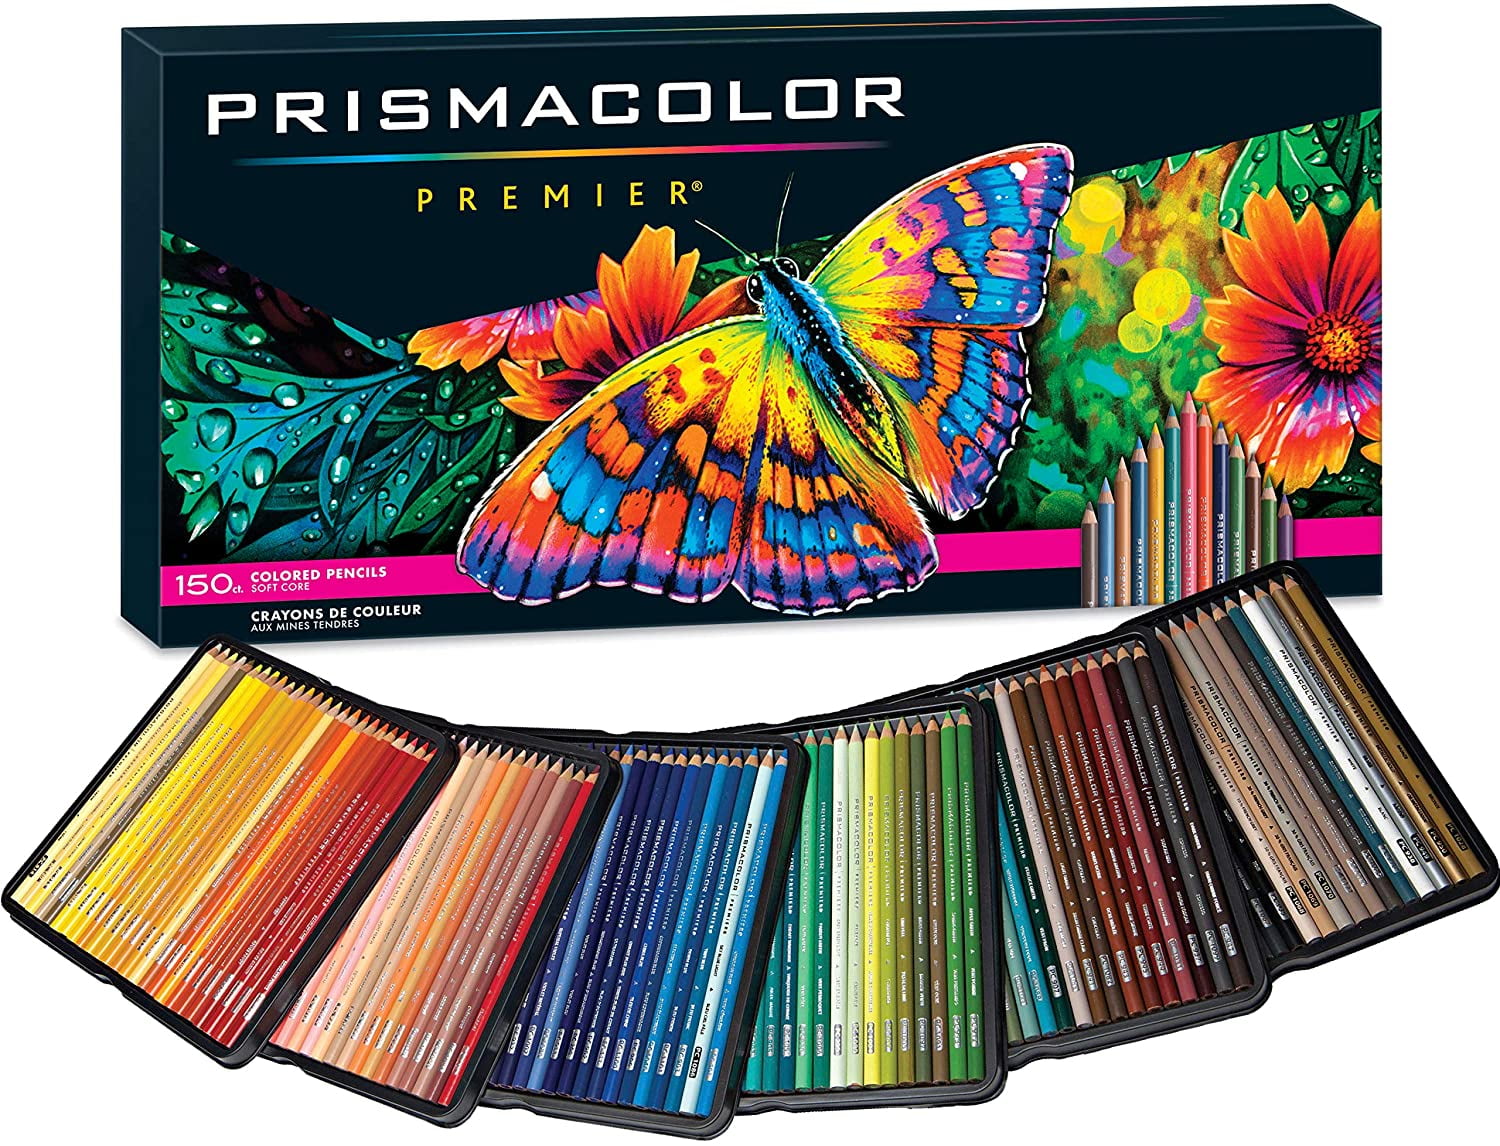 Pack of 48 Multi-Colour Sanford Prismacolor Premier Colored Pencils